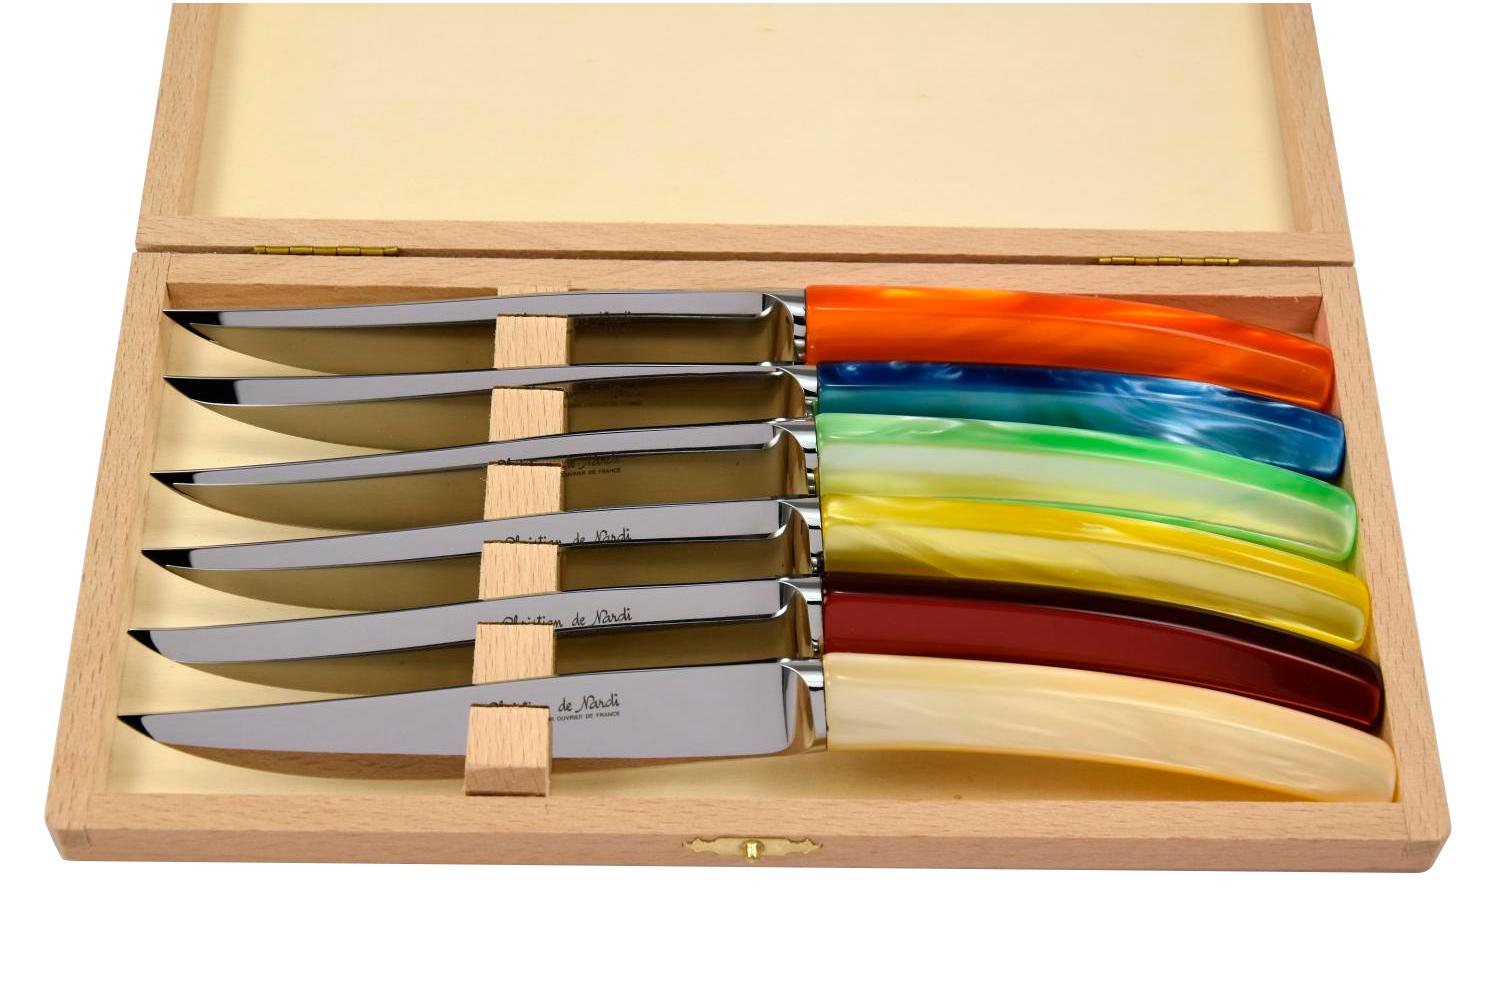 MODELE SILENE
couteau table par 6
manche plexi six coloris assortis